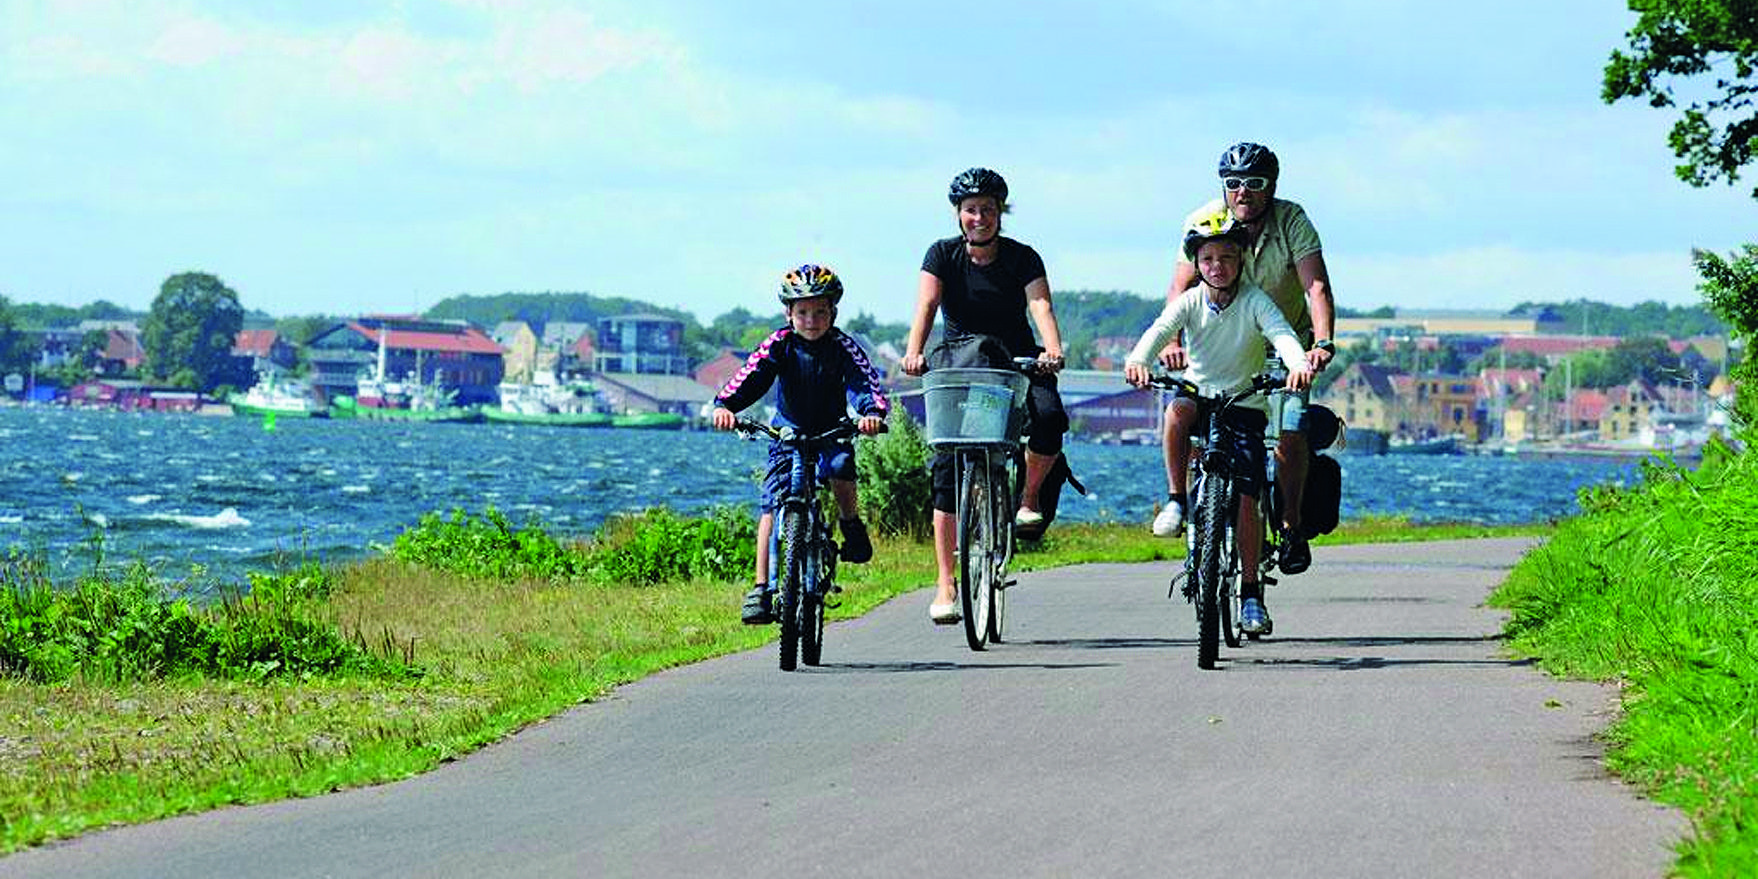 Radreisen Skandinavien - mit bike-touring.de nach Dänemark und Schweden